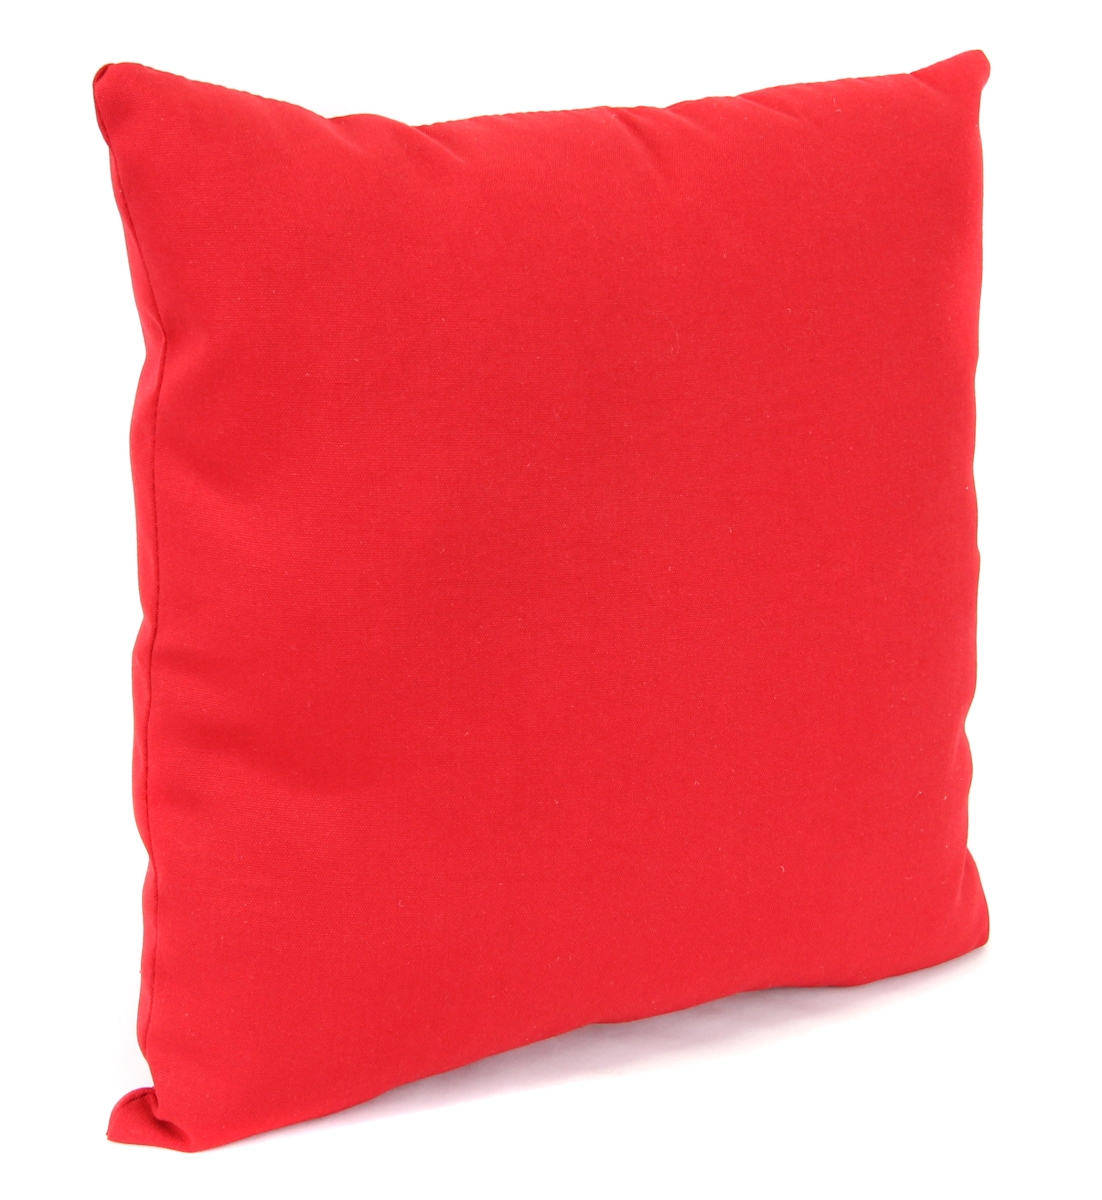 9950pk1-278c 18 X 18 In. Outdoor Pillow In Pompeii Red